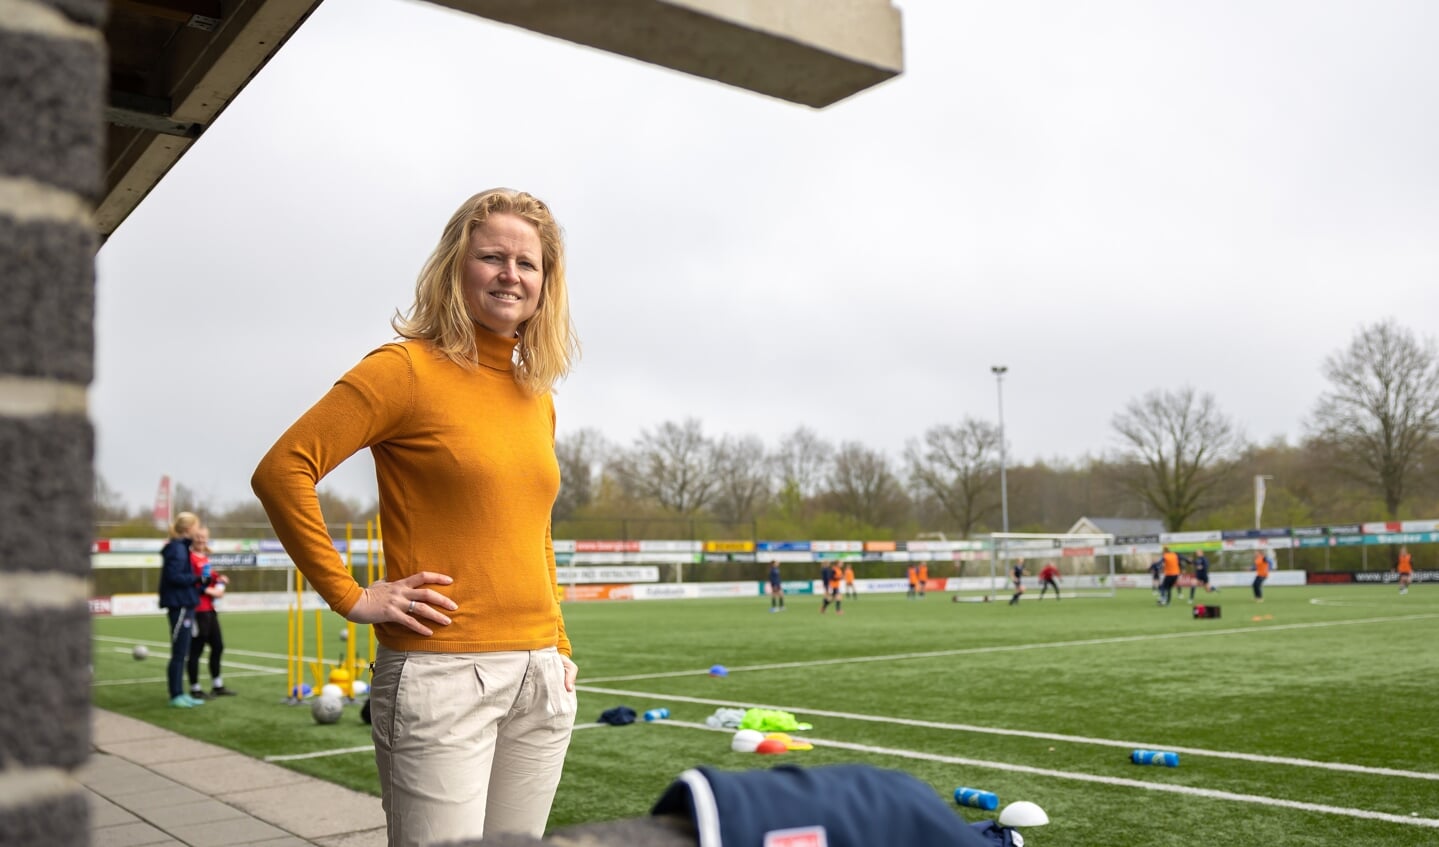 Manager vrouwenvoetbal Mariska Kogelman: "Bij Berkum kunnen we goed trainen en wedstrijden spelen."